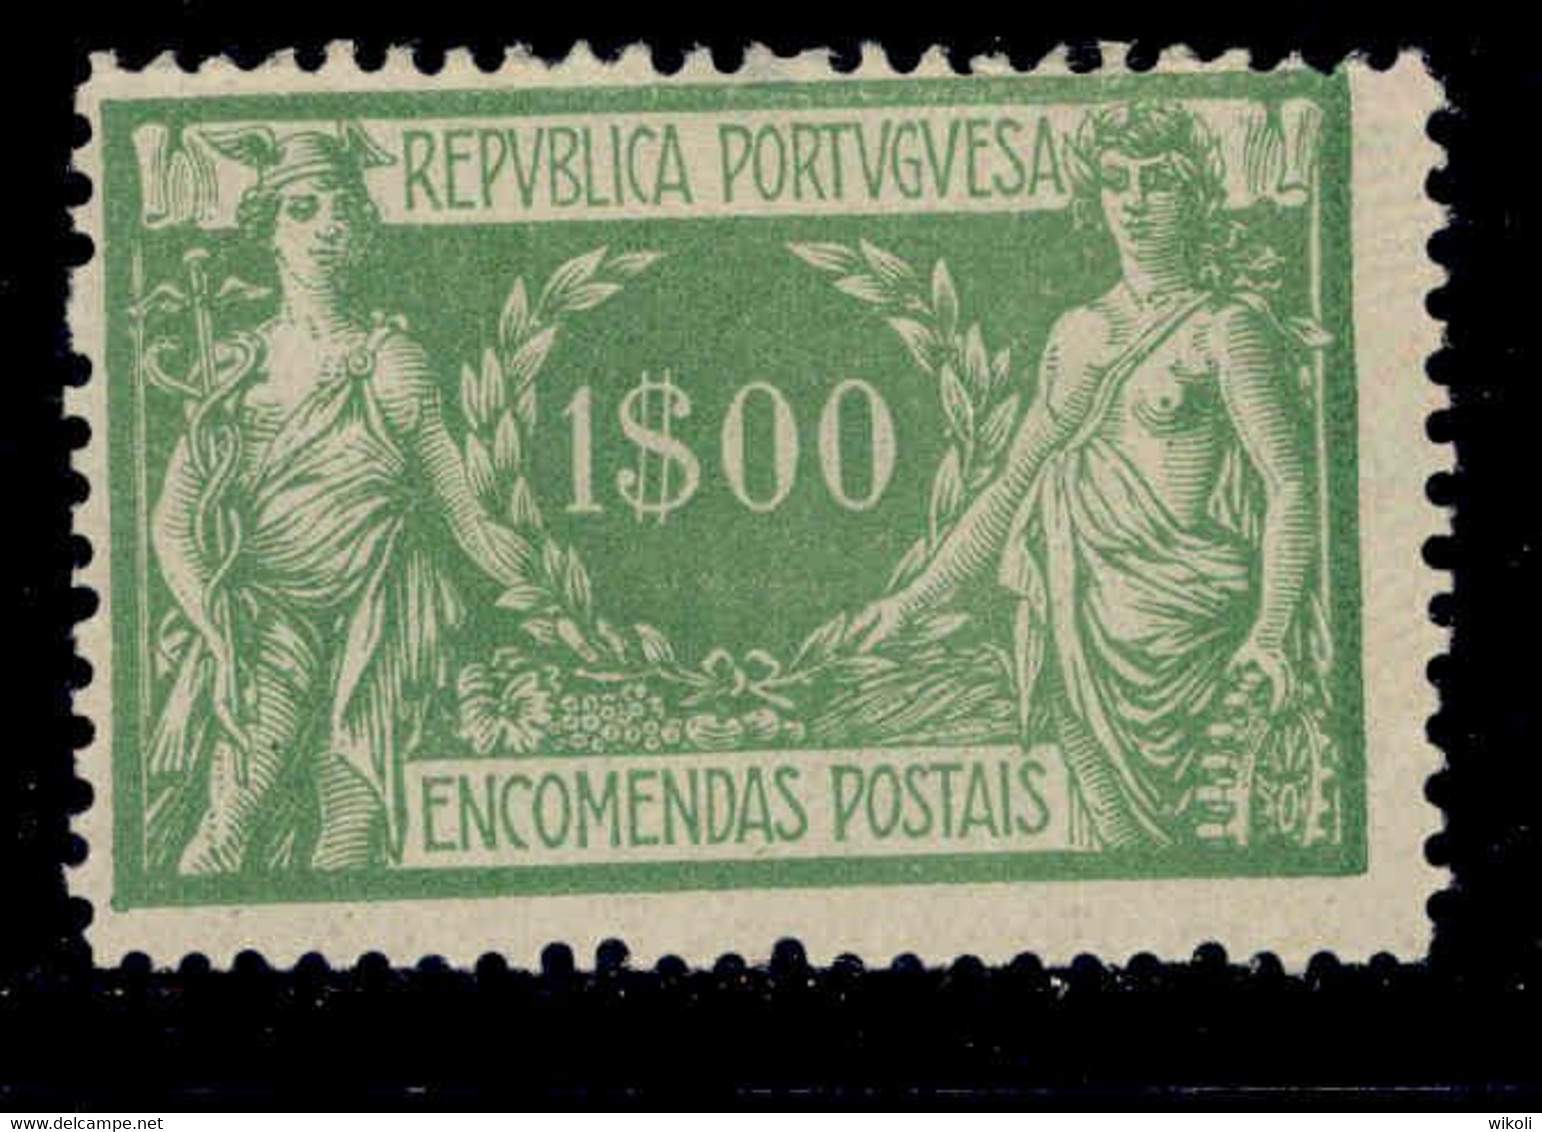 ! ! Portugal - 1920 Parcel Post 1$00 - Af. EP 12 - No Gum - Neufs